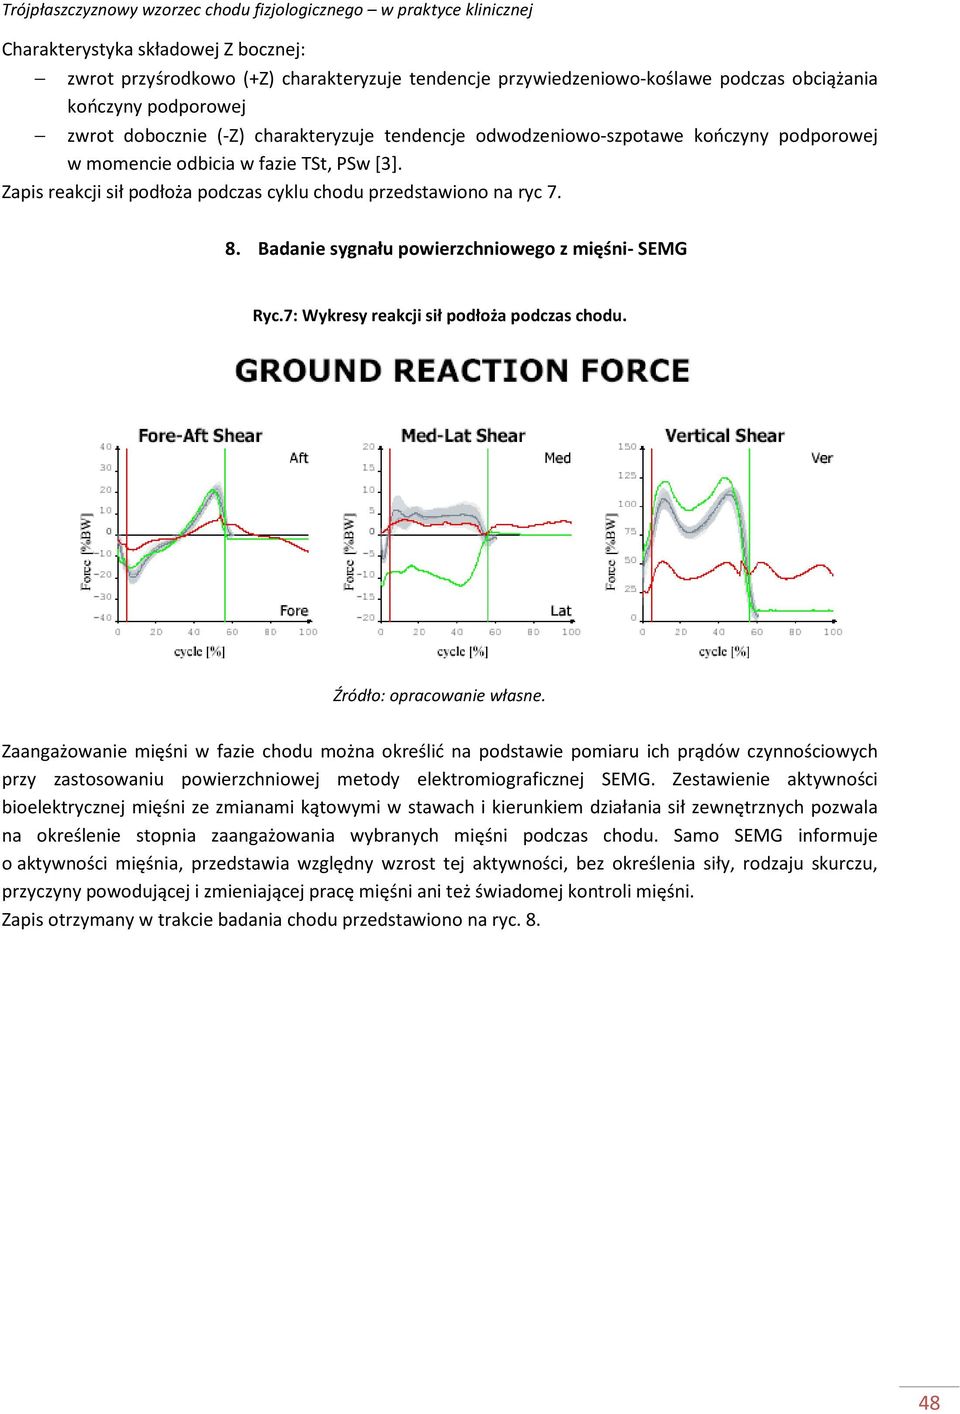 Badanie sygnału powierzchniowego z mięśni- SEMG Ryc.7: Wykresy reakcji sił podłoża podczas chodu. Źródło: opracowanie własne.